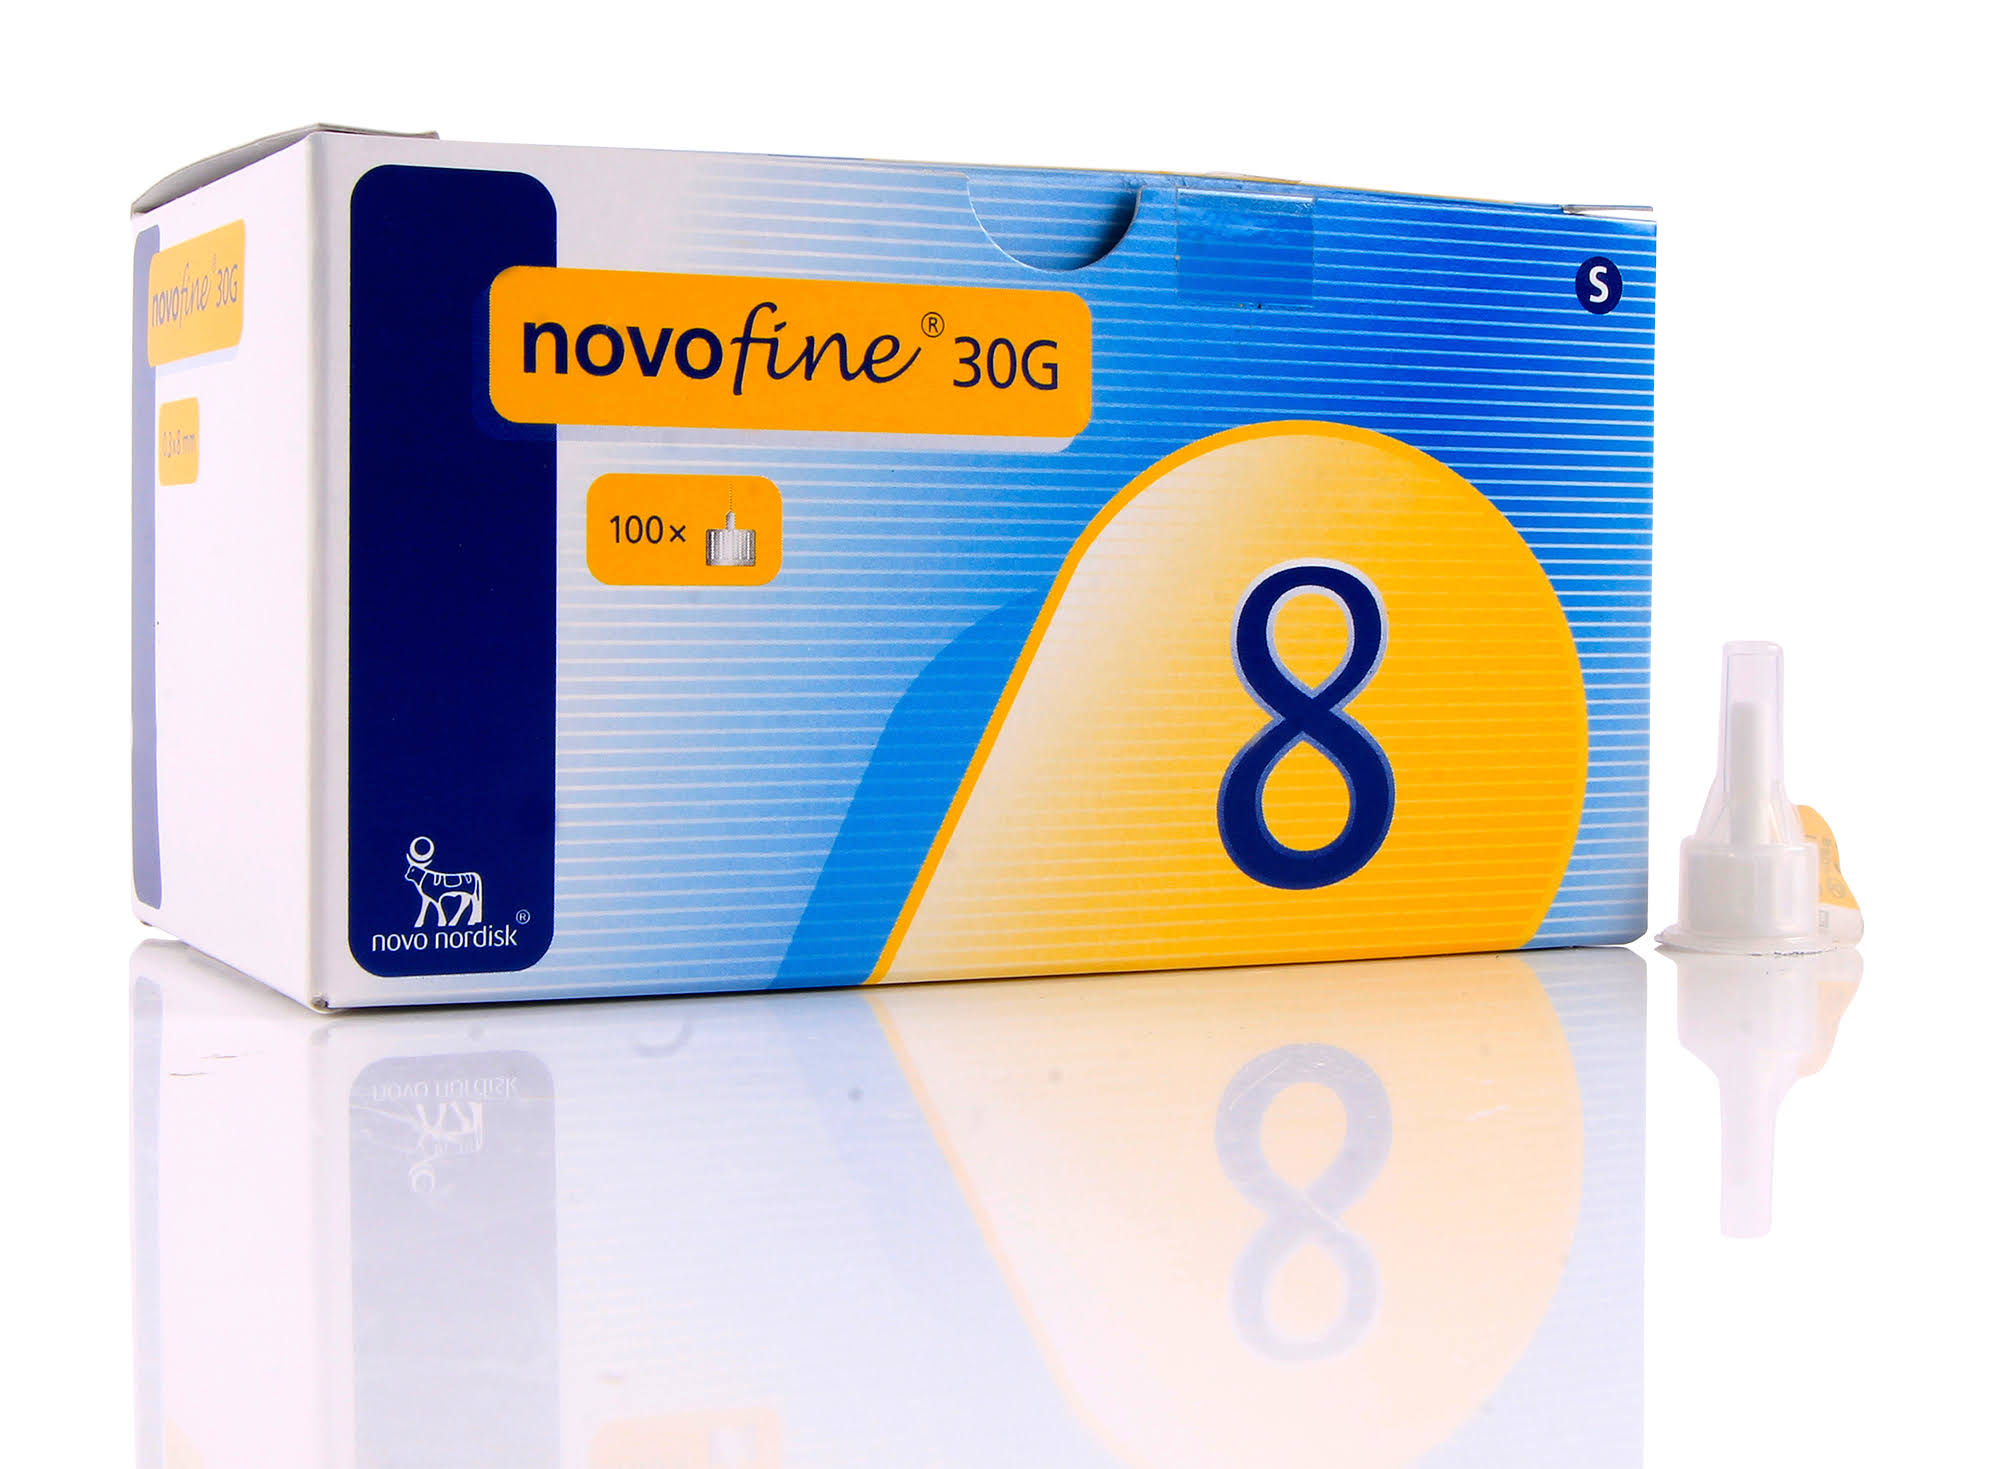 Novofine Pen Needles 30g x 8mm - Box of 100 Novo 30g